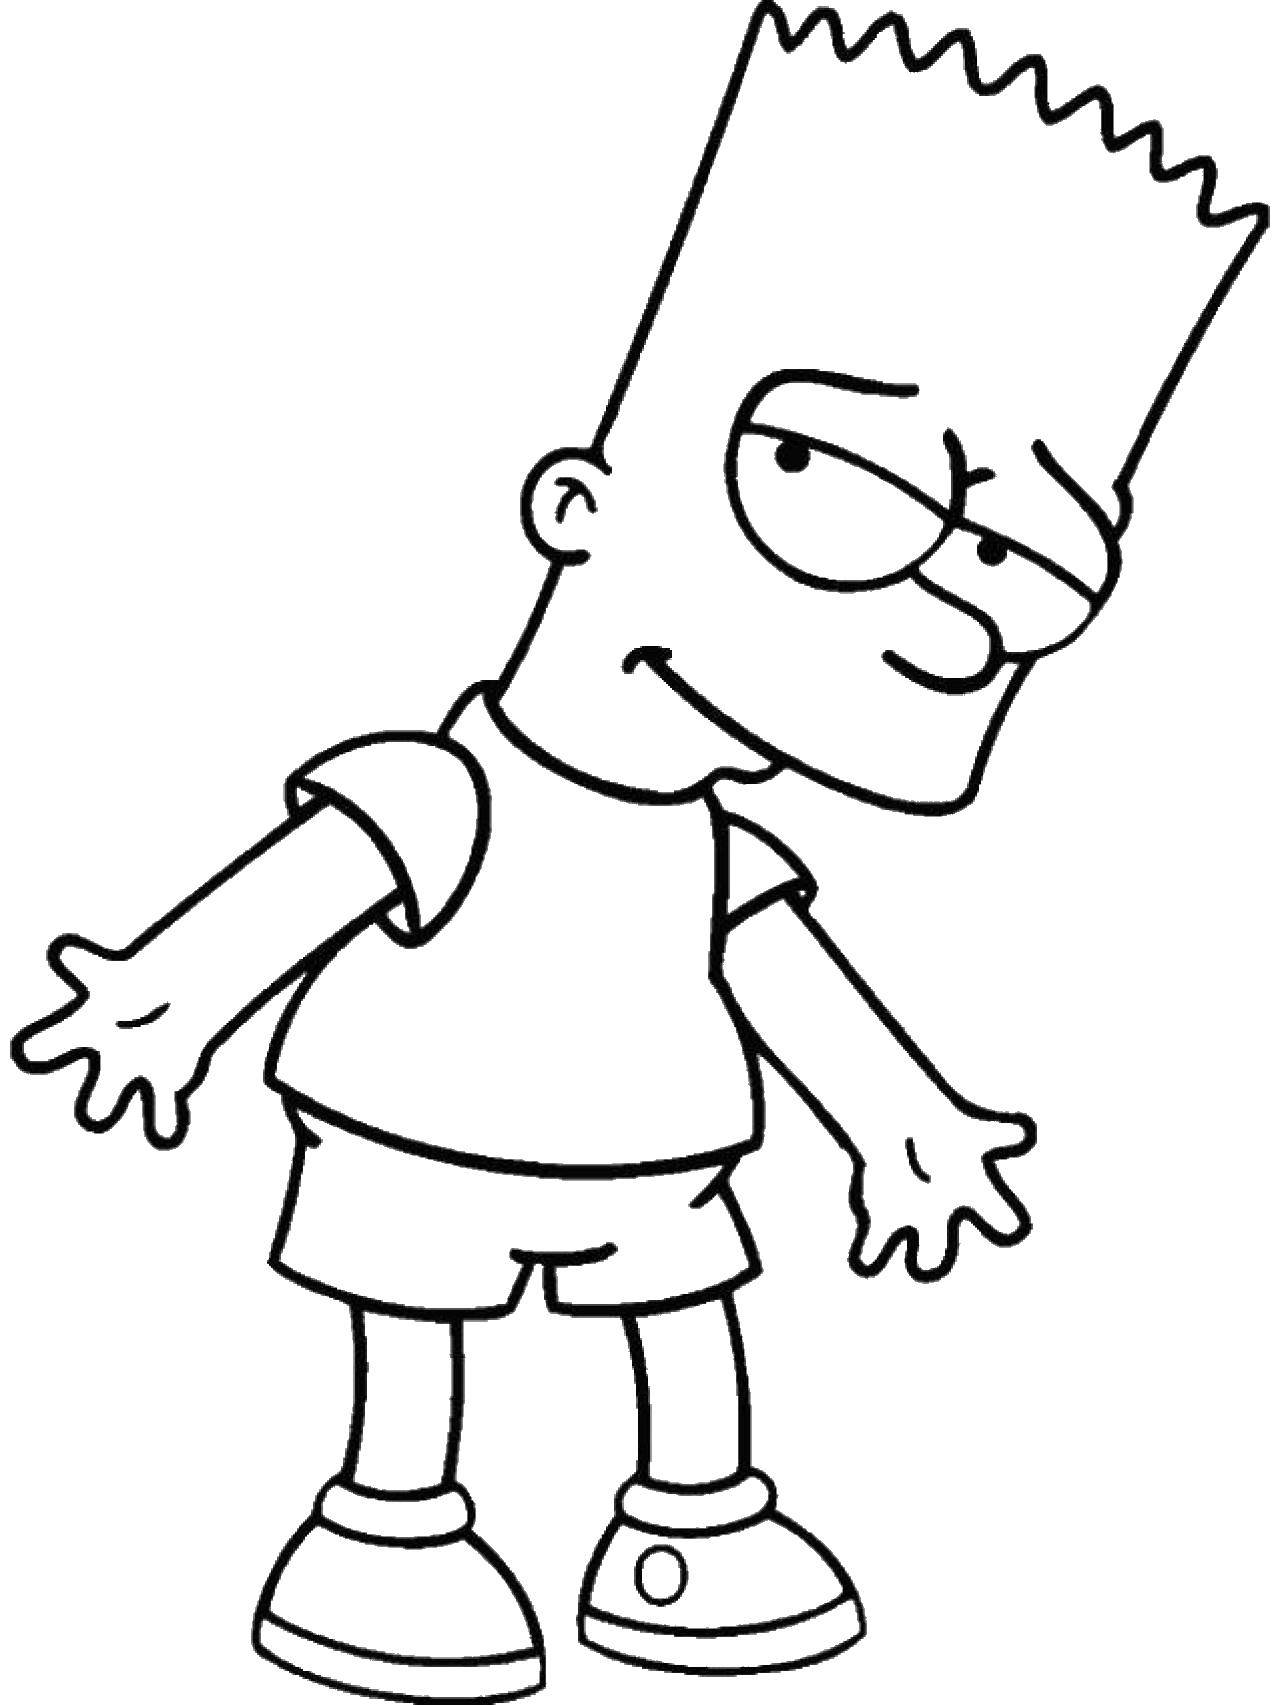 Название: Раскраска Барт симпсон. Категория: мультфильмы. Теги: Персонаж из мультфильма, Симпсоны.